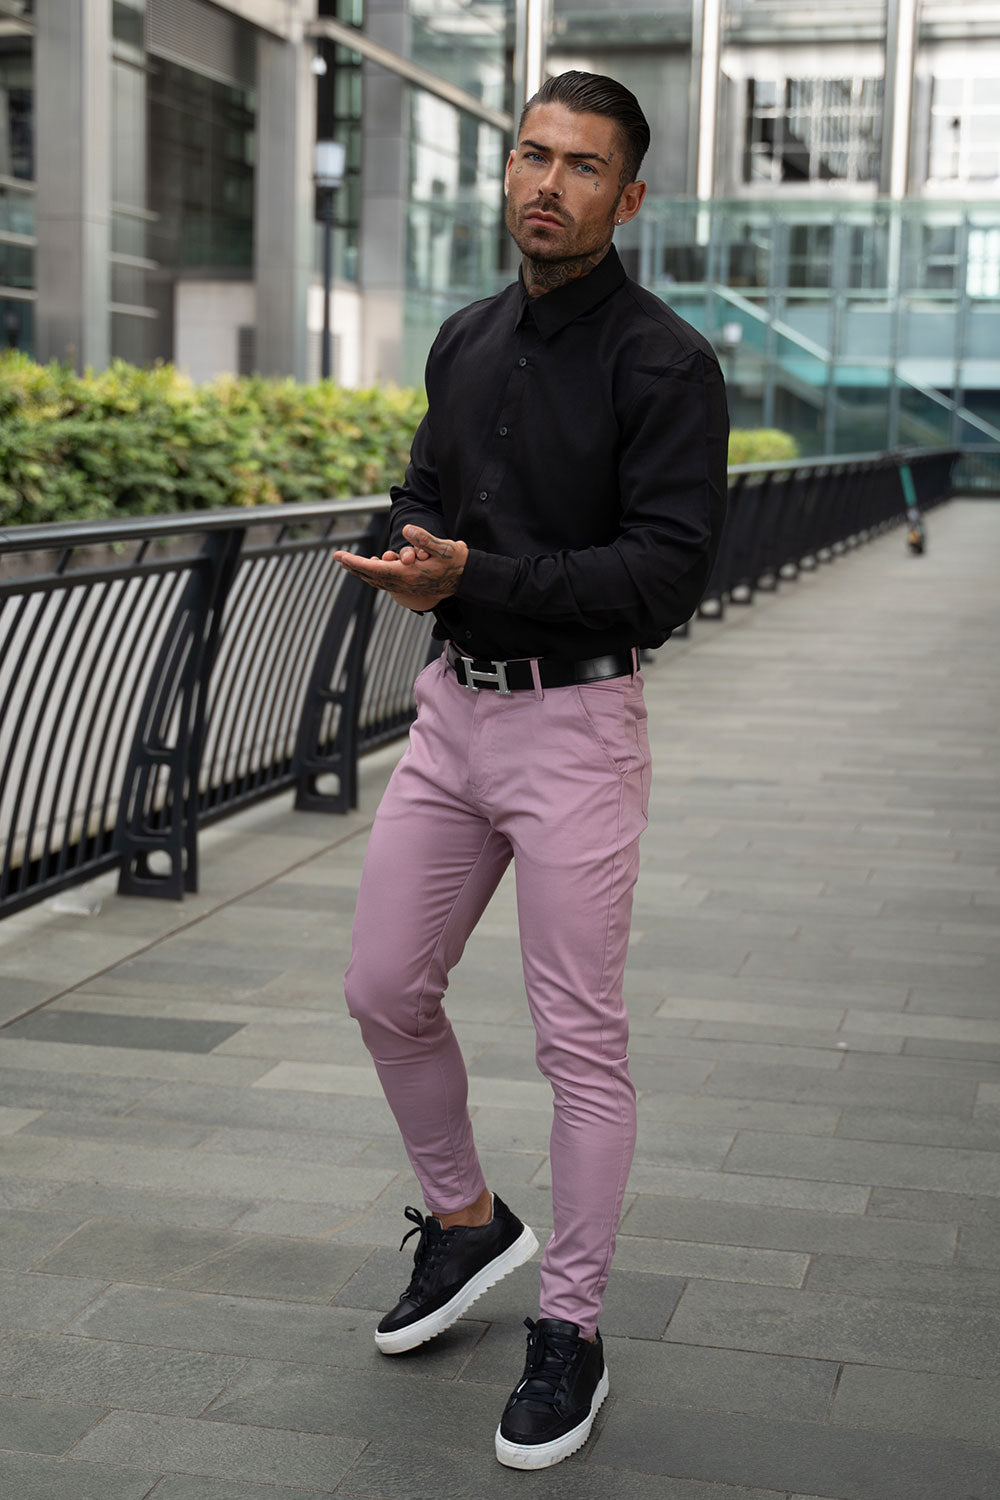 Black Guy in Pink Pants